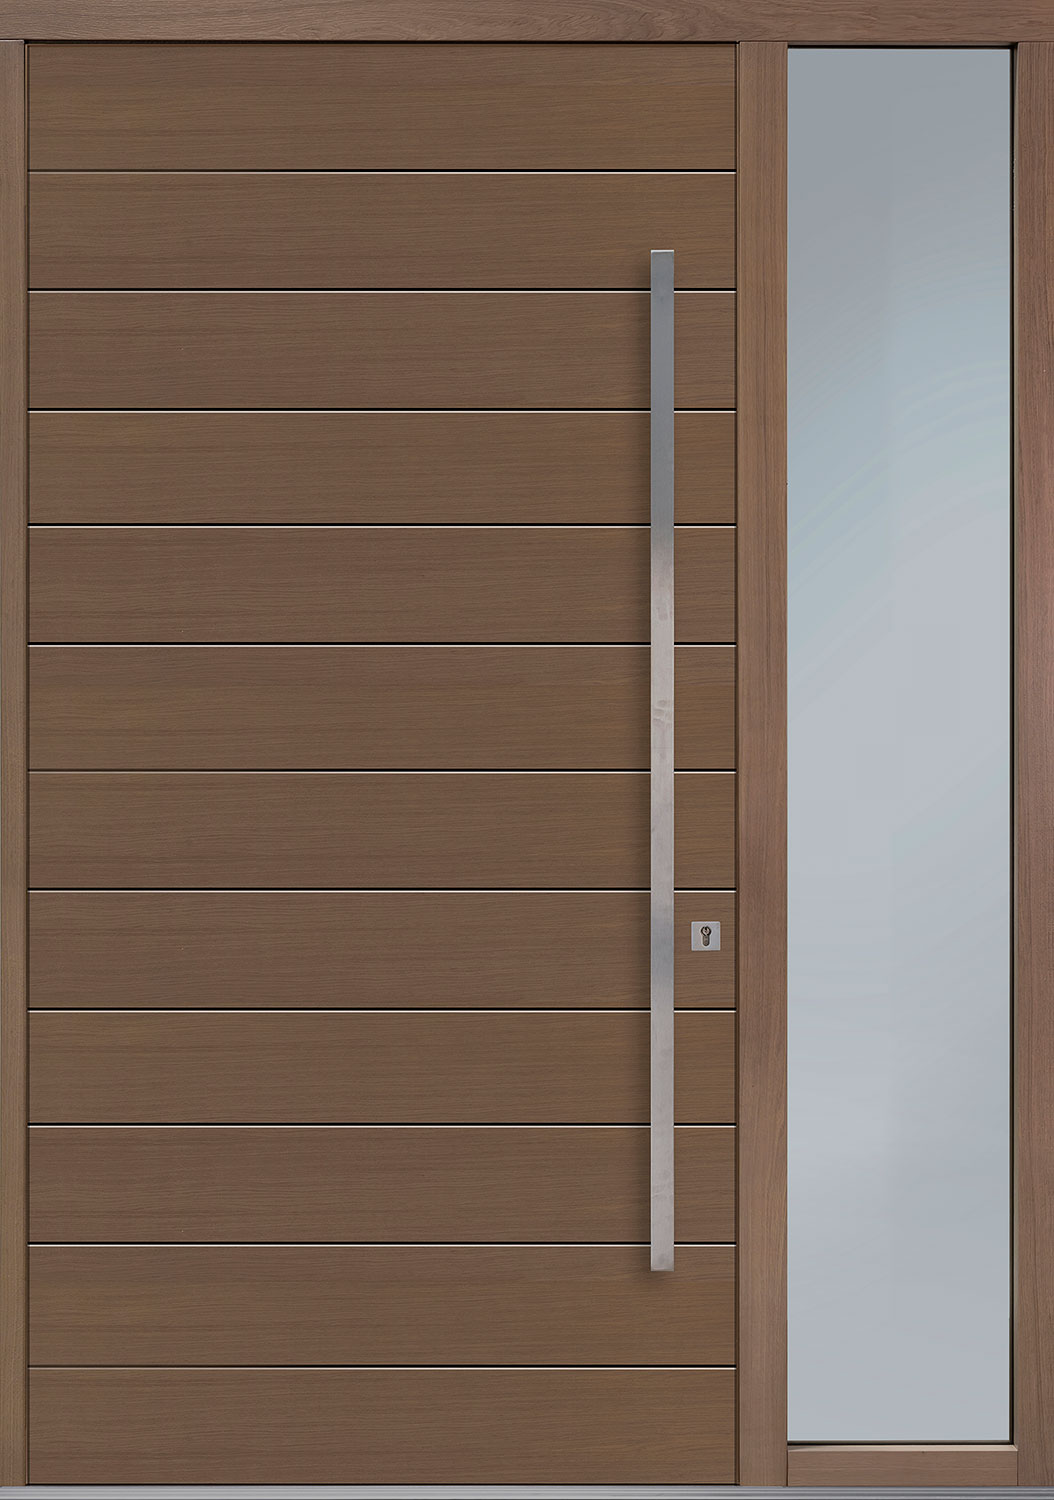 Oak-Wood-Veneer Solid Wood Front Entry Door - Single with 1 Sidelite